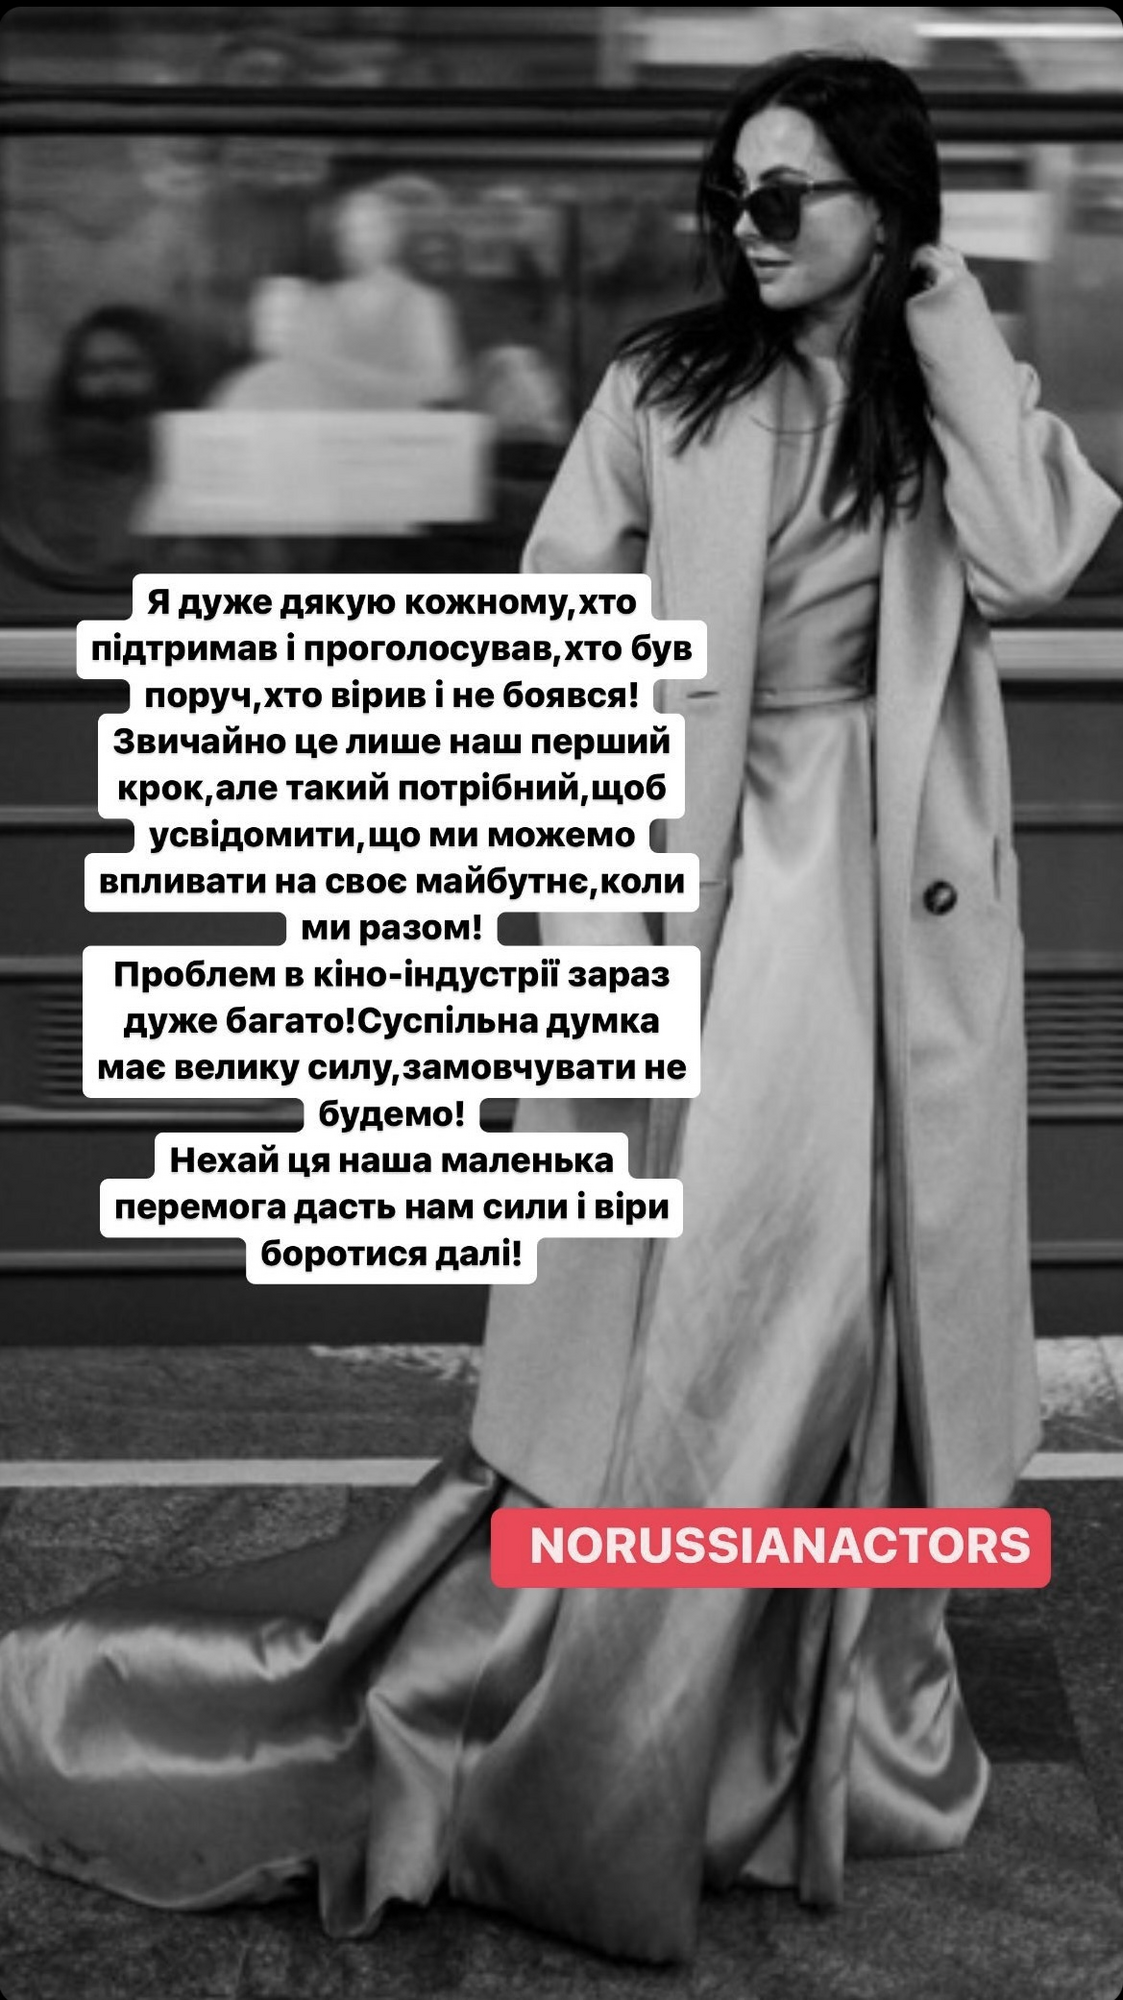 "Маленькая победа": Зеленский рассмотрел петицию актрисы Ходос о запрете российских артистов в Украине